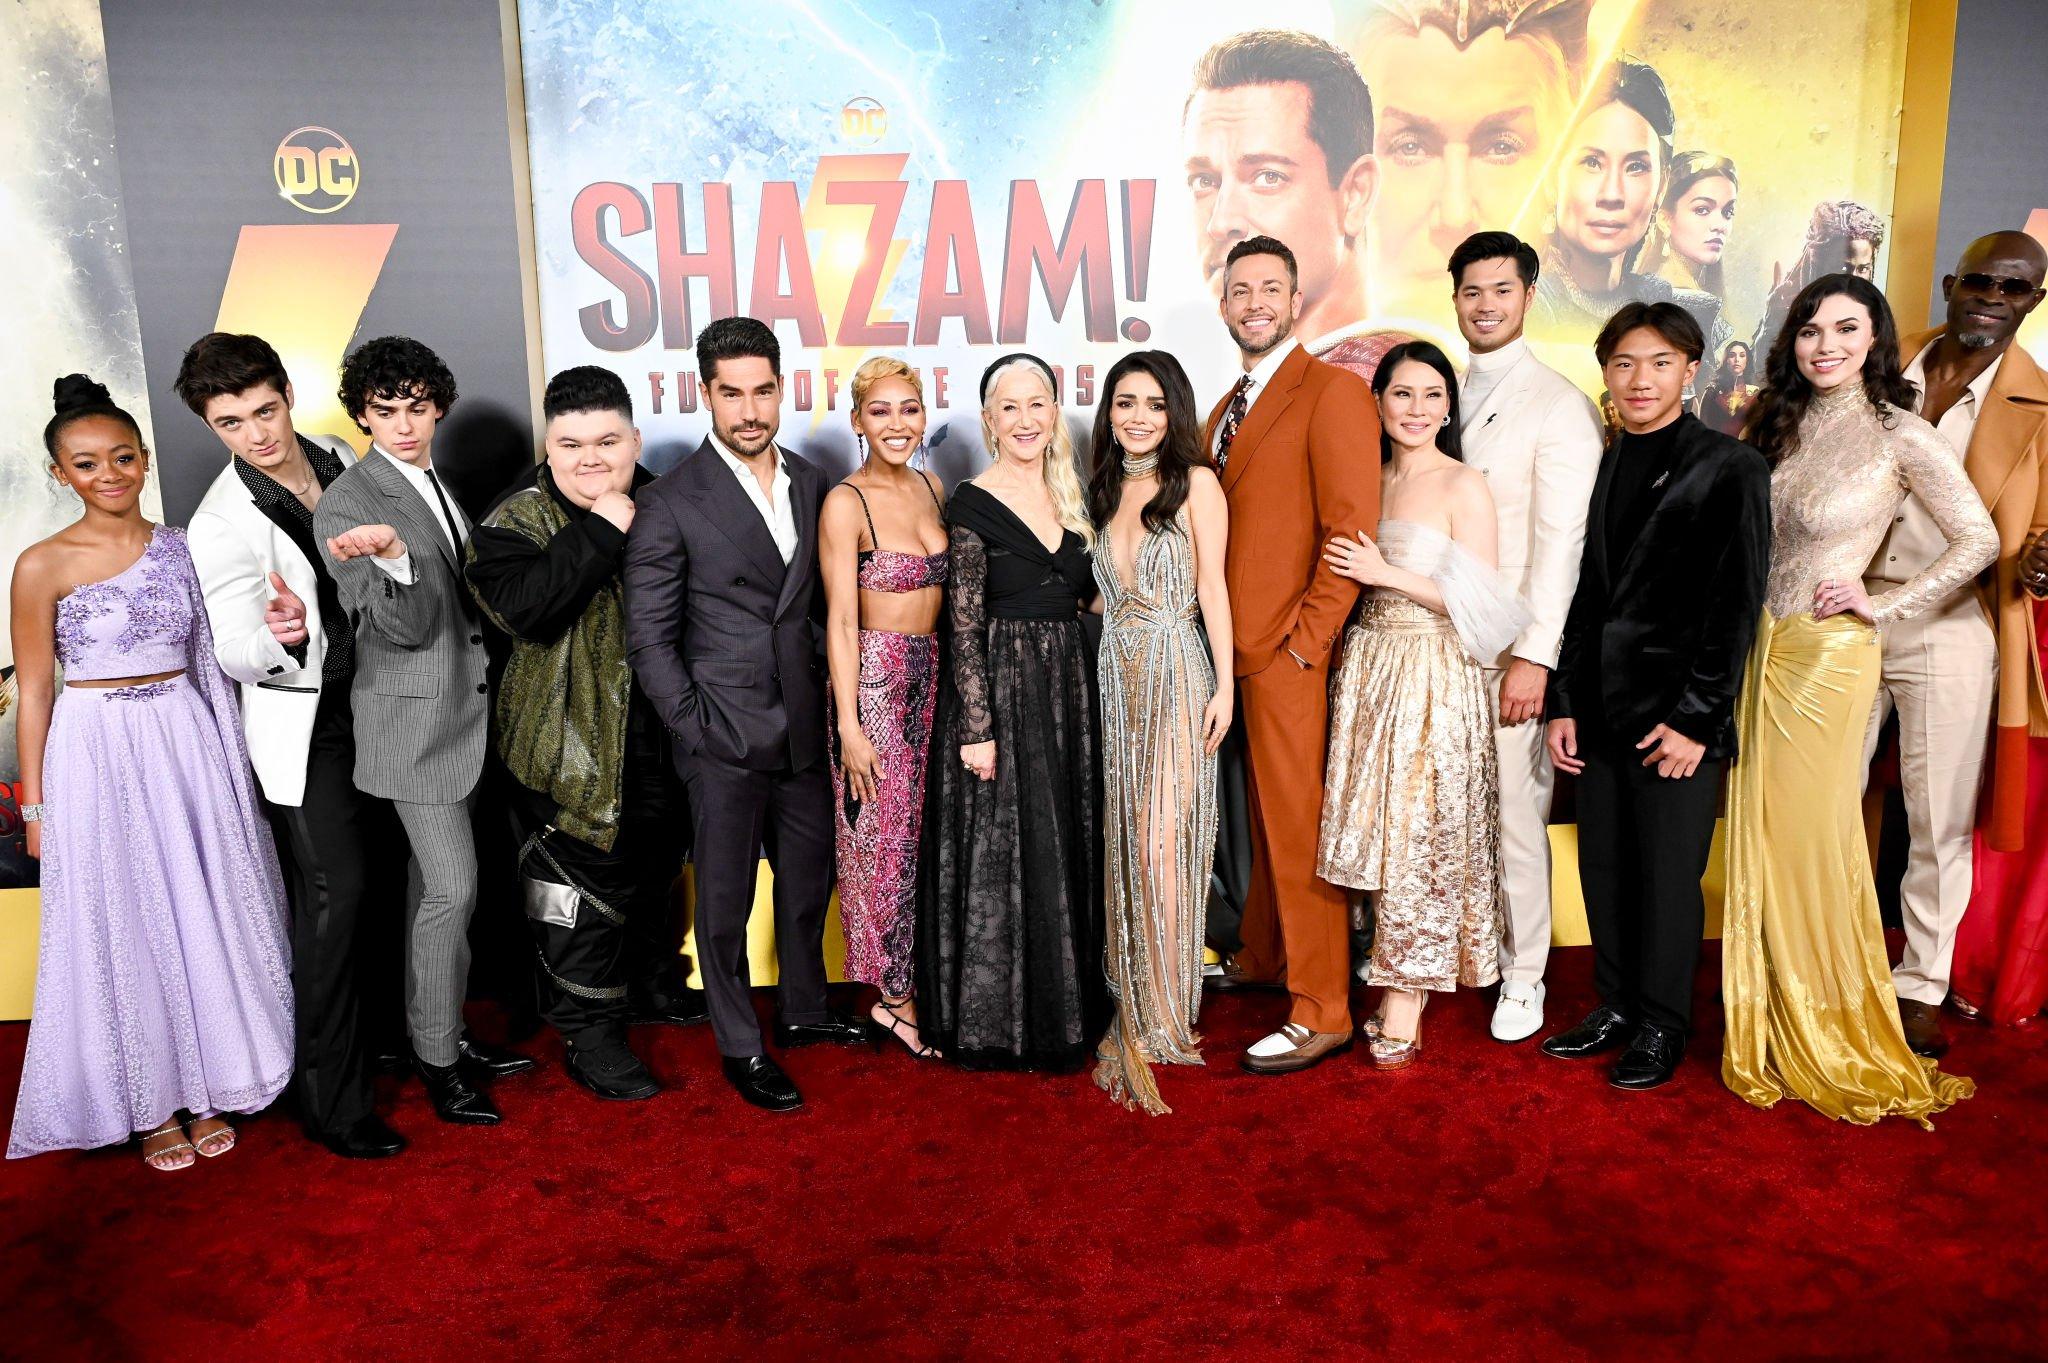 DCVERSO on X: O elenco completo de #Shazam2: Fury Of The Gods